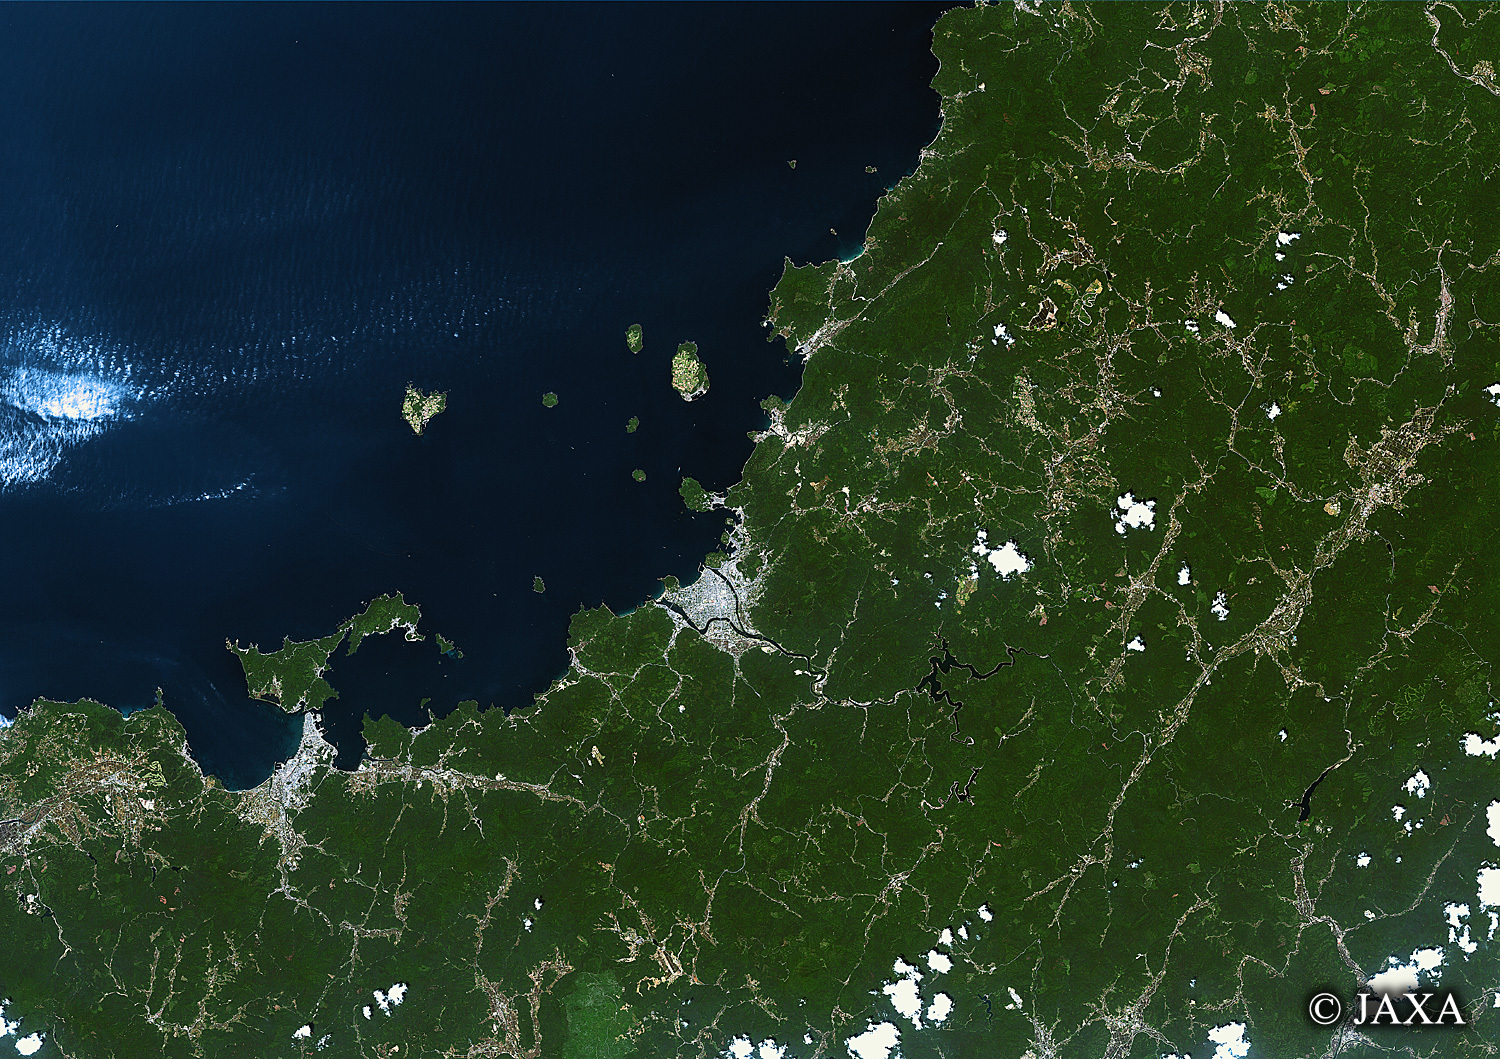 だいちから見た日本の都市 北長門海岸:衛星画像